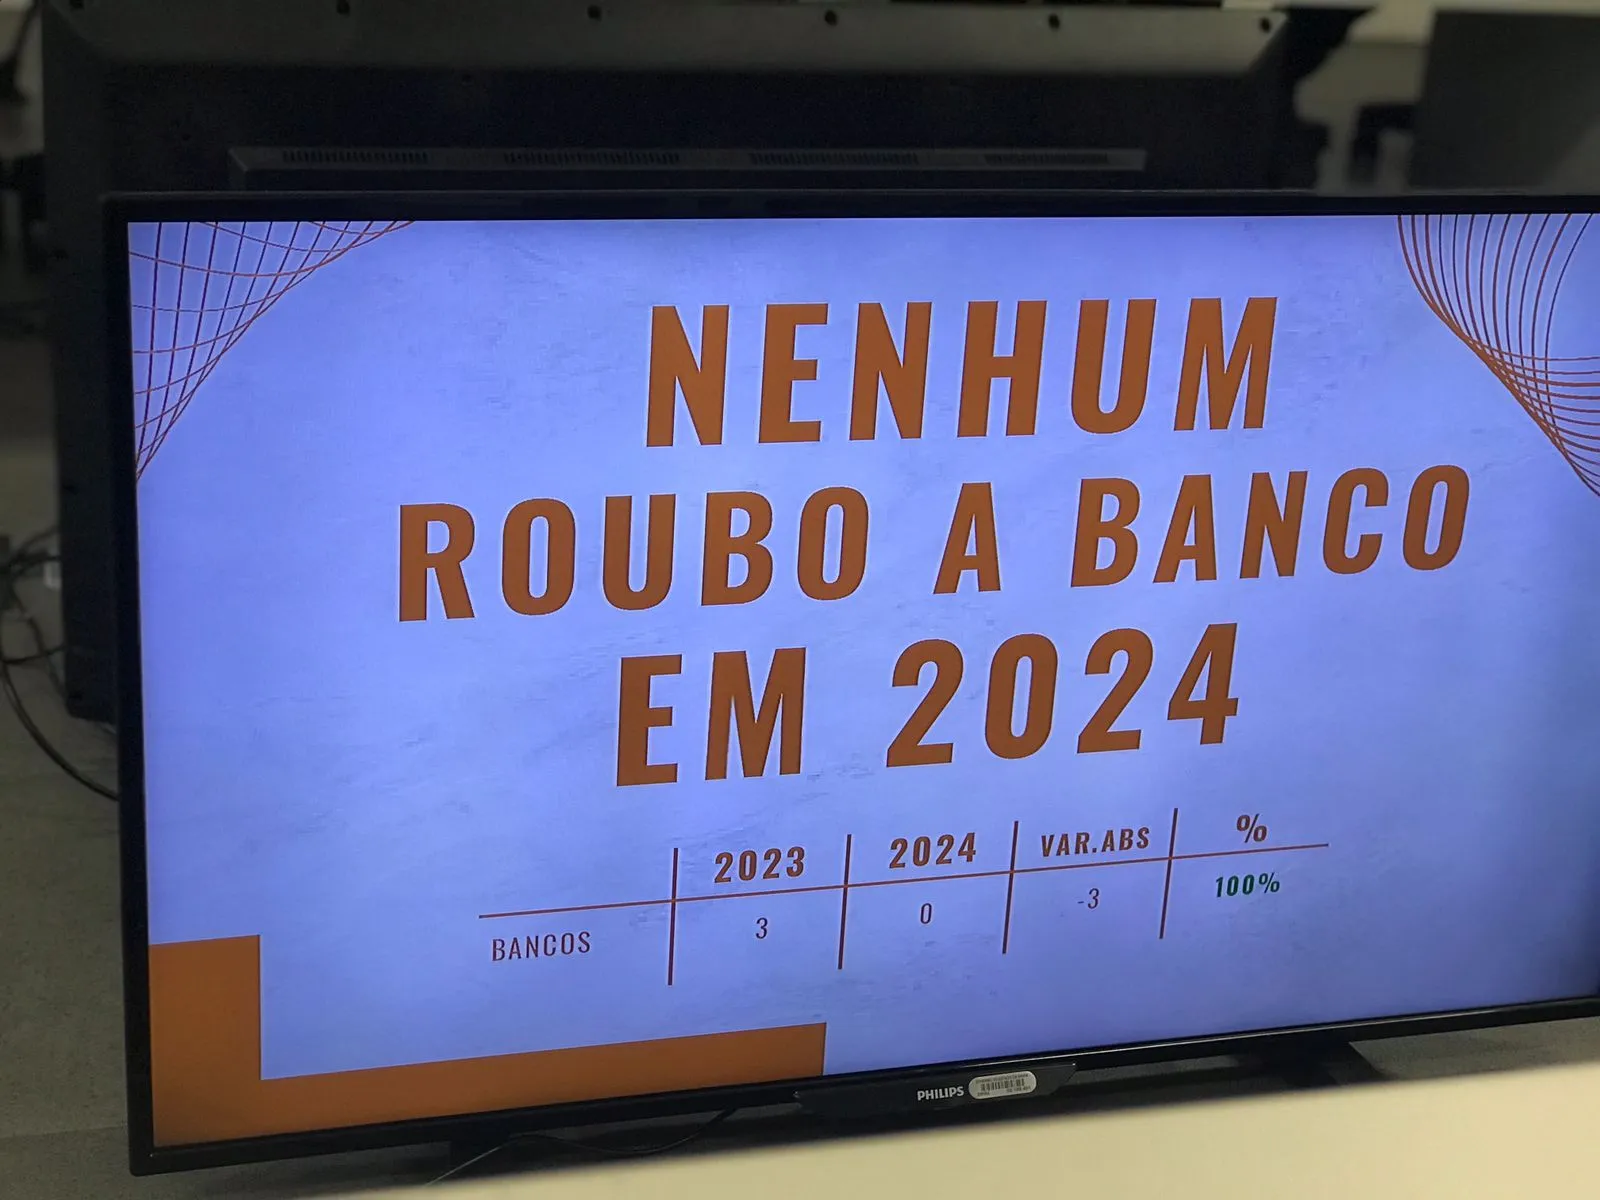 Casos de roubos a bancos na Bahia em 2024 reduziram para zero em relação ao ano anterior